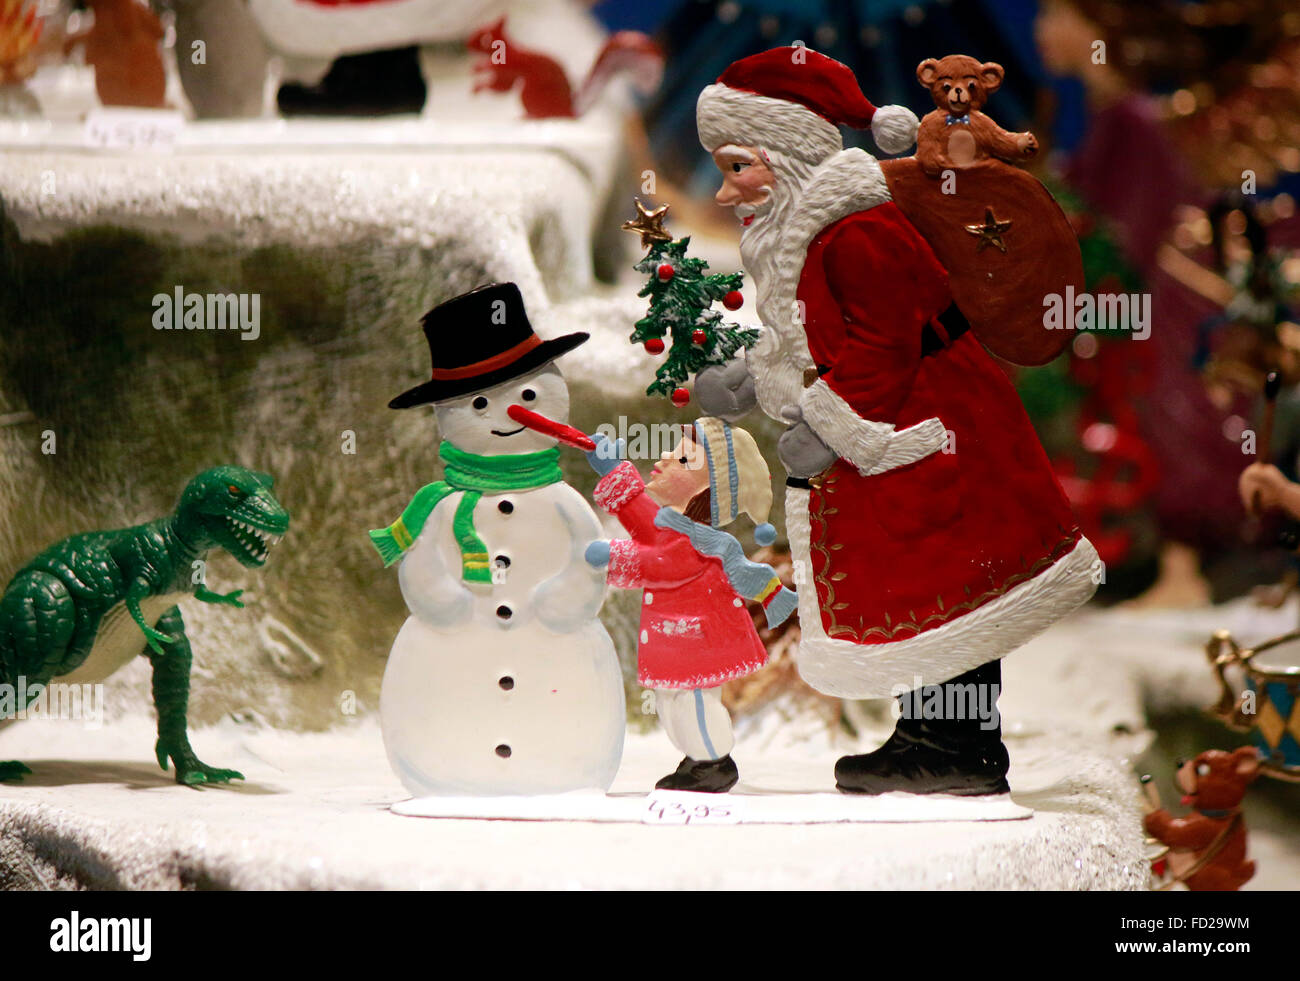 Weihnachtsmann, Kind, Schneemann, Weihnachtsbaum - Schaufensterdekoration zu Weihnachten, Berlin. Stock Photo